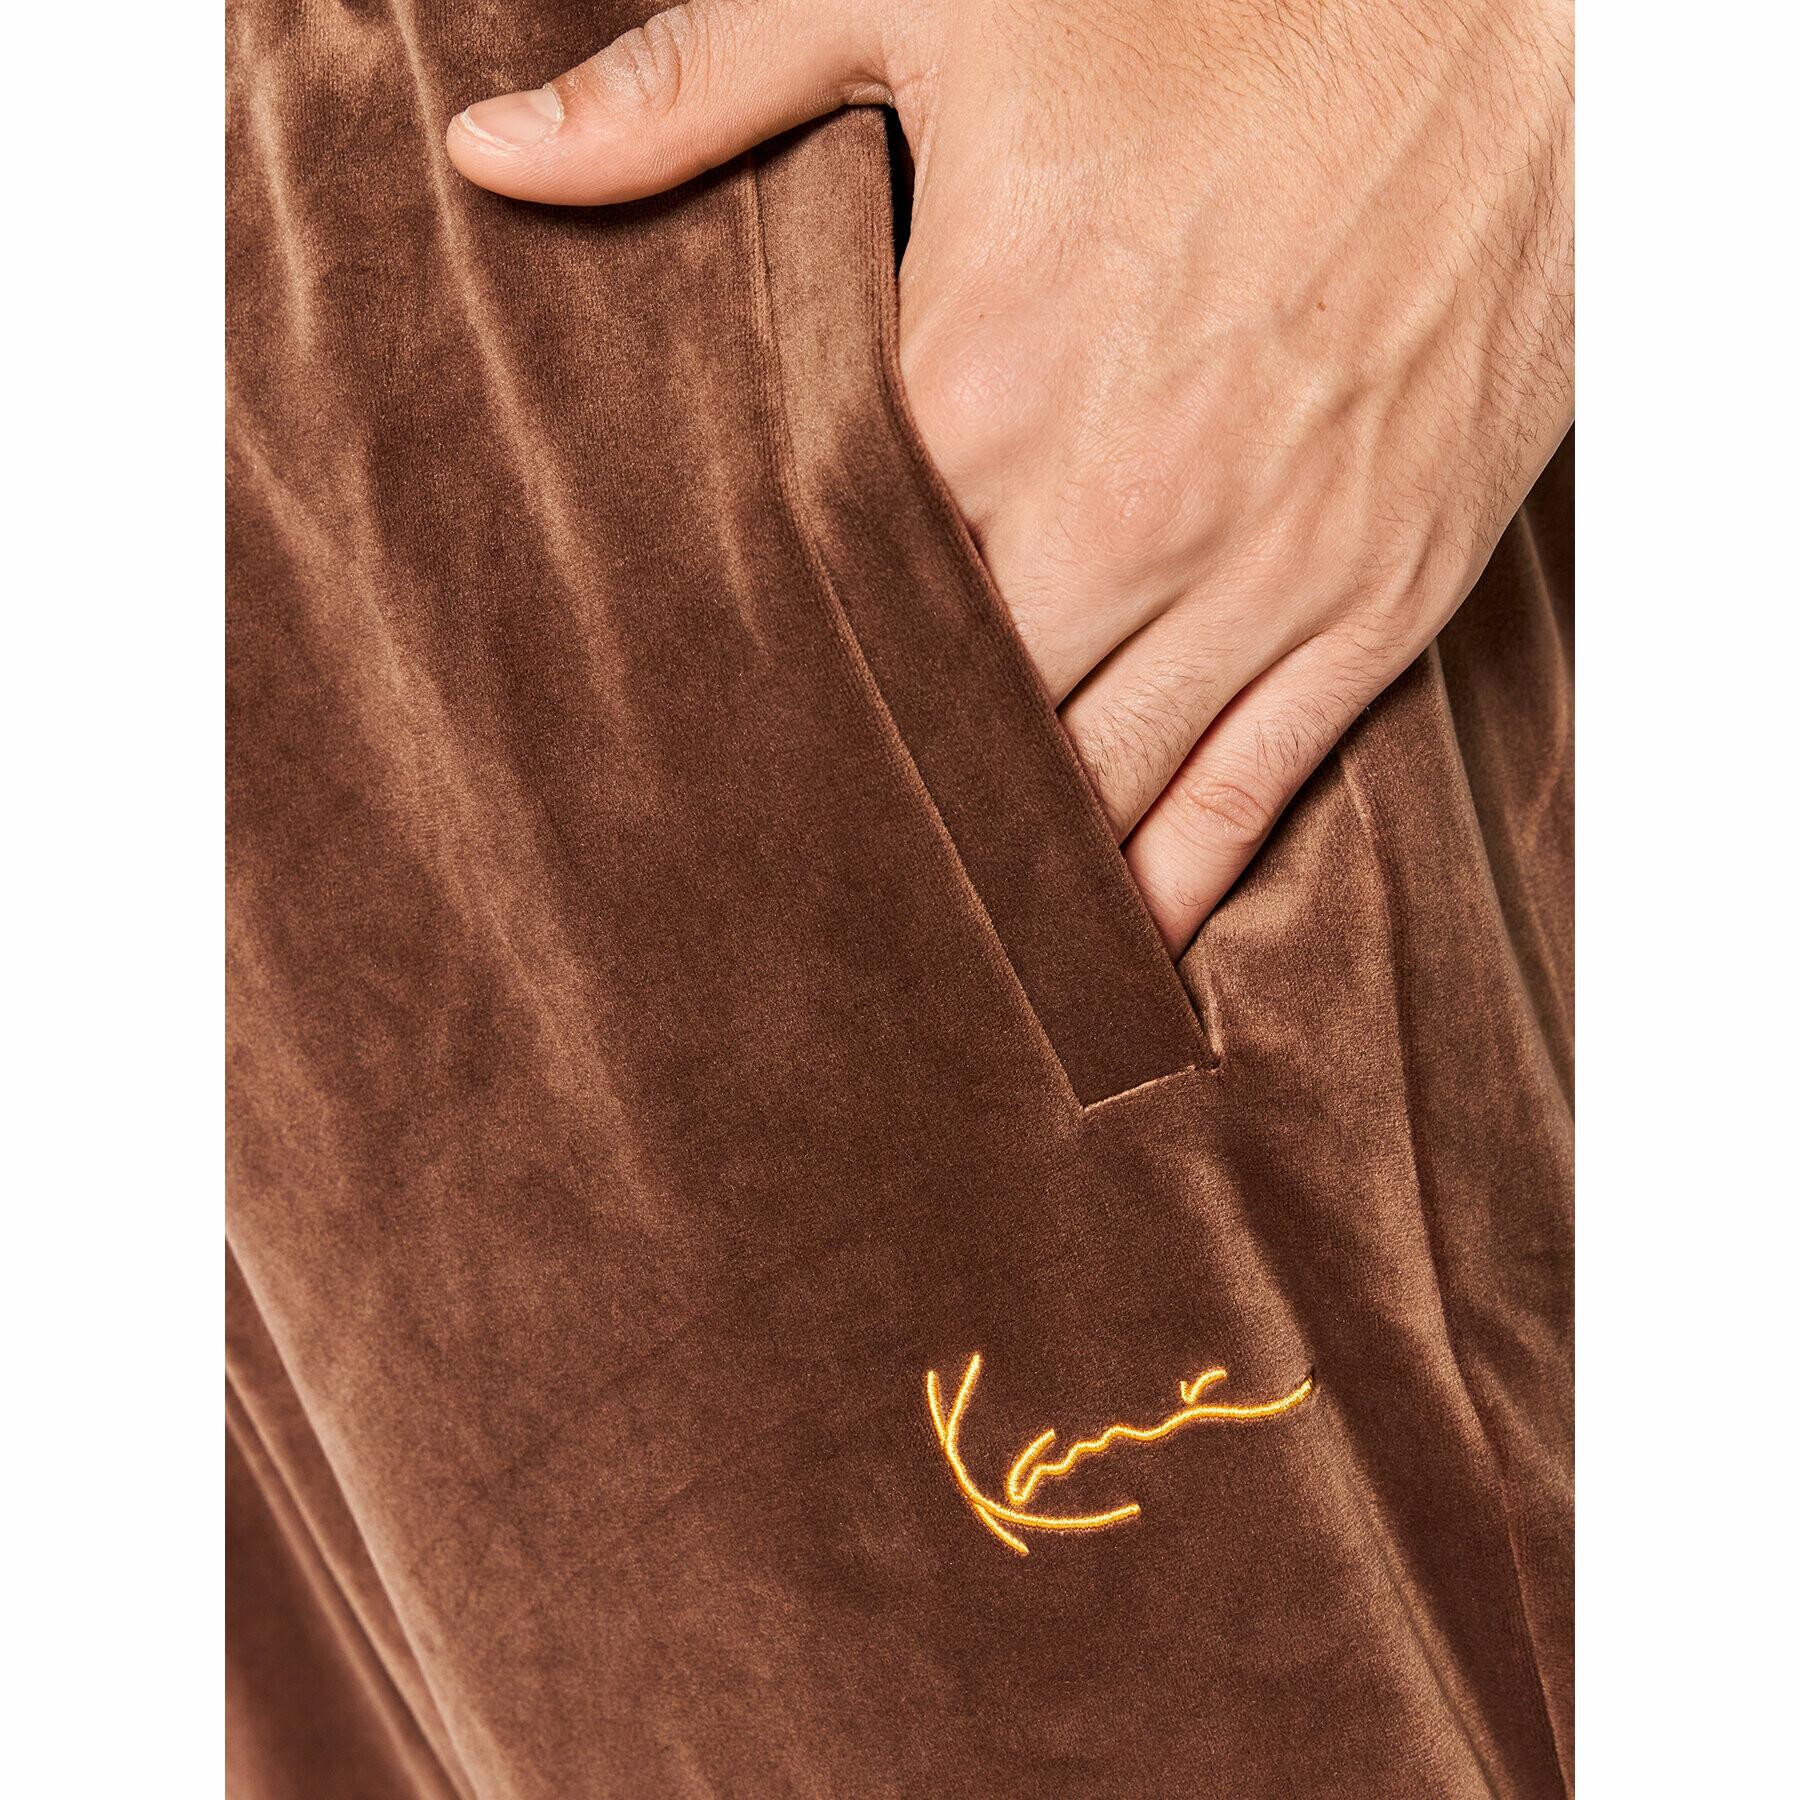 Pantalon de survêtement Karl Kani Small Signature